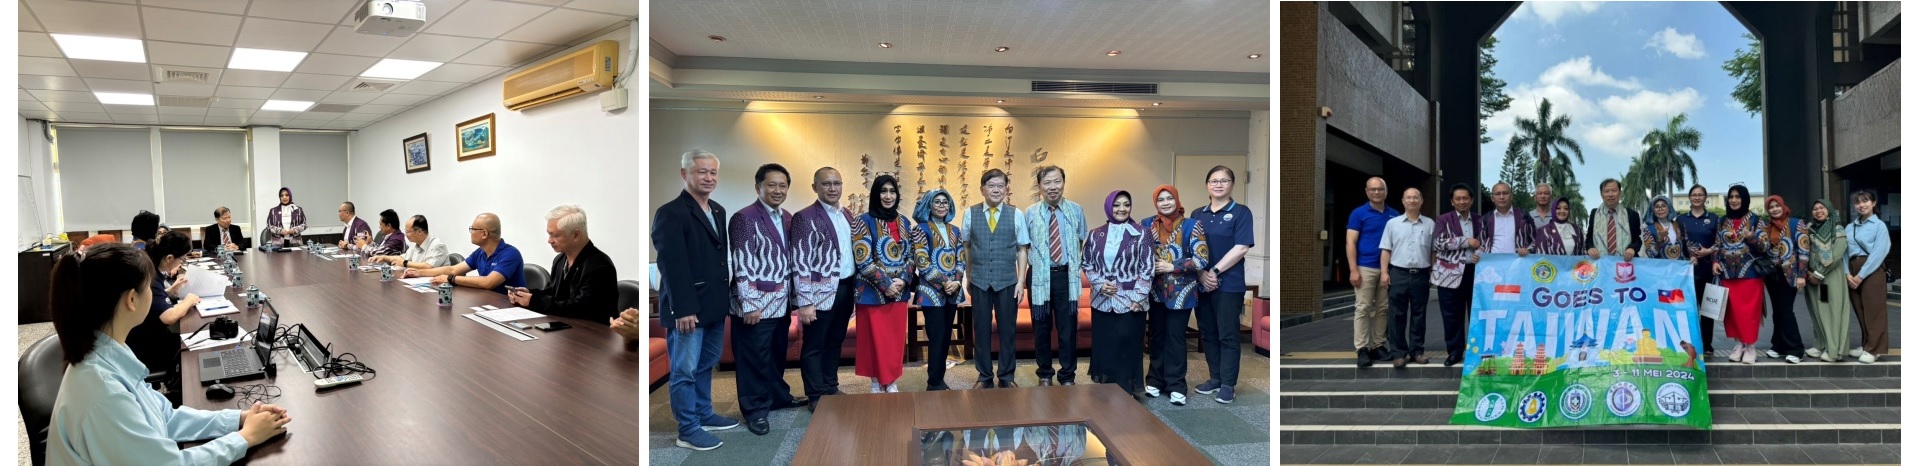 印尼2所大學蒞校訪問 理、工國際學程雙聯合作達成共識